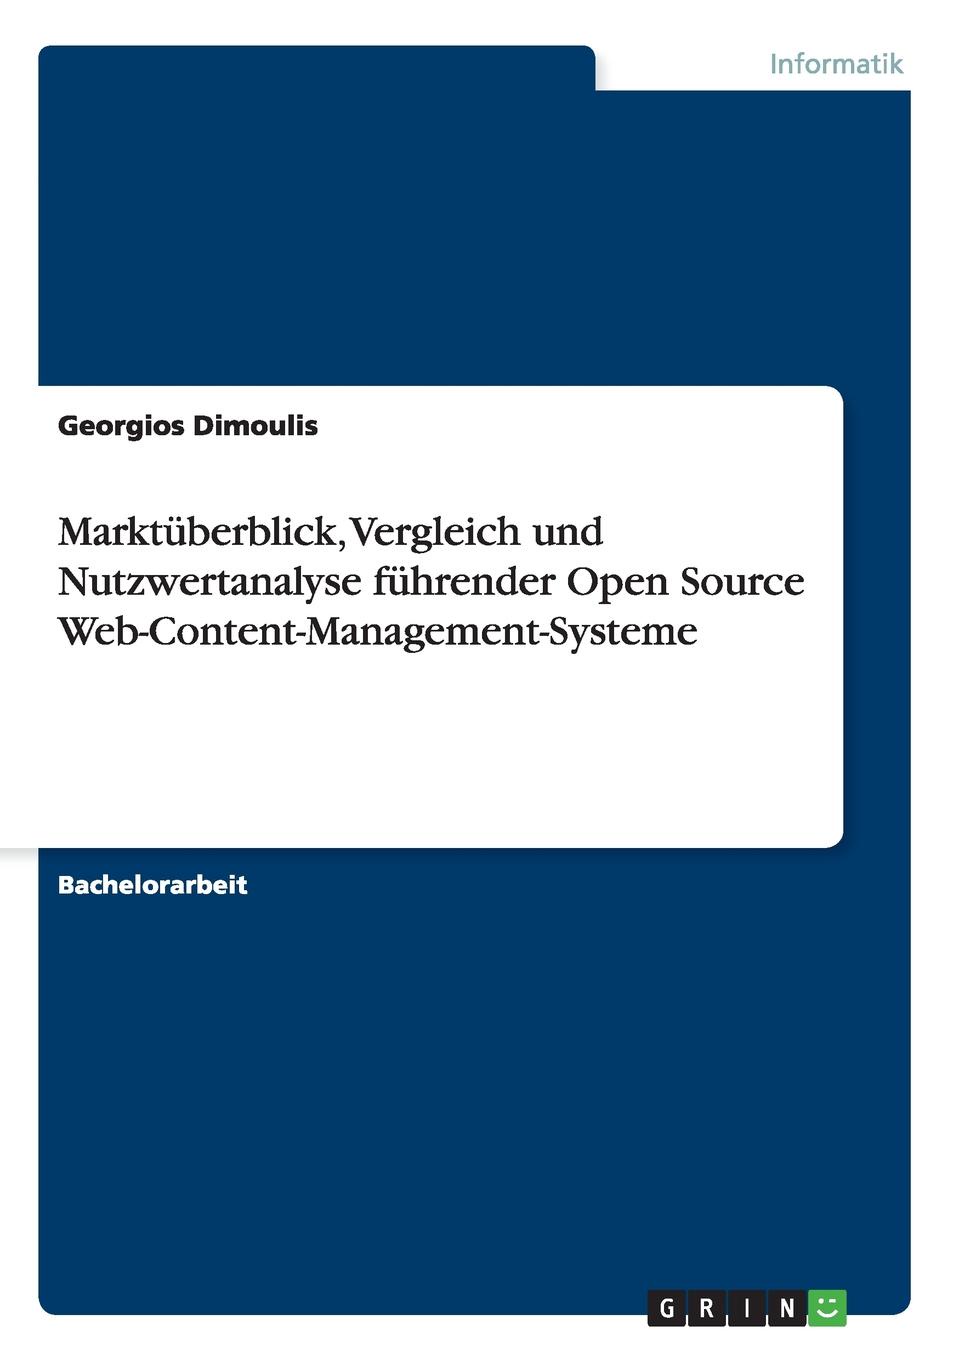 Marktuberblick, Vergleich und Nutzwertanalyse fuhrender Open Source Web-Content-Management-Systeme